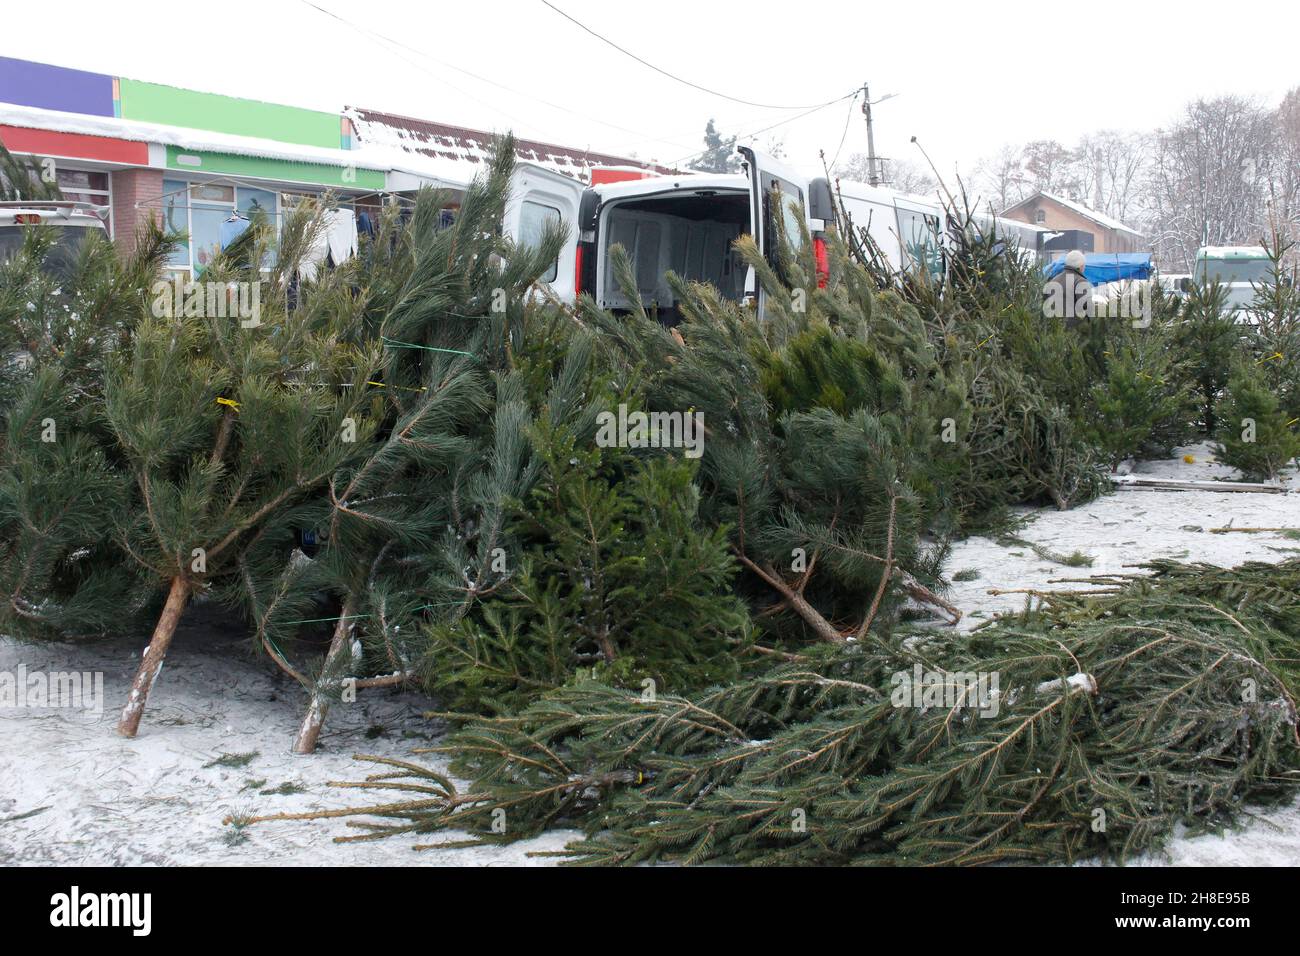 Venta de árboles de Navidad en el mercado de la calle Foto de stock